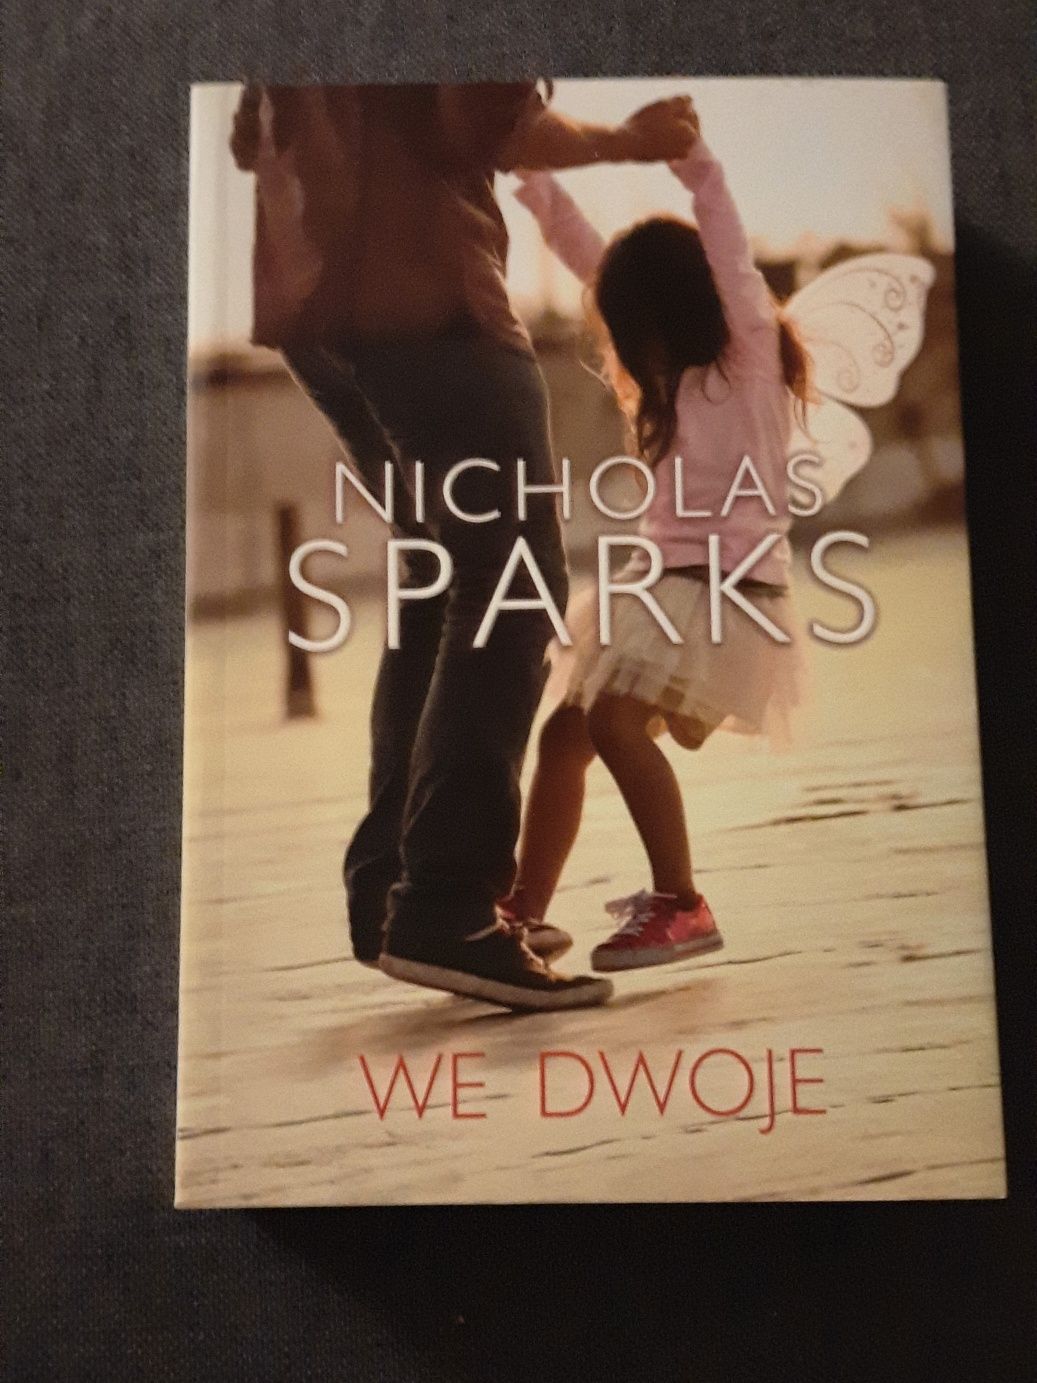 Nicholas sparks - we dwoje